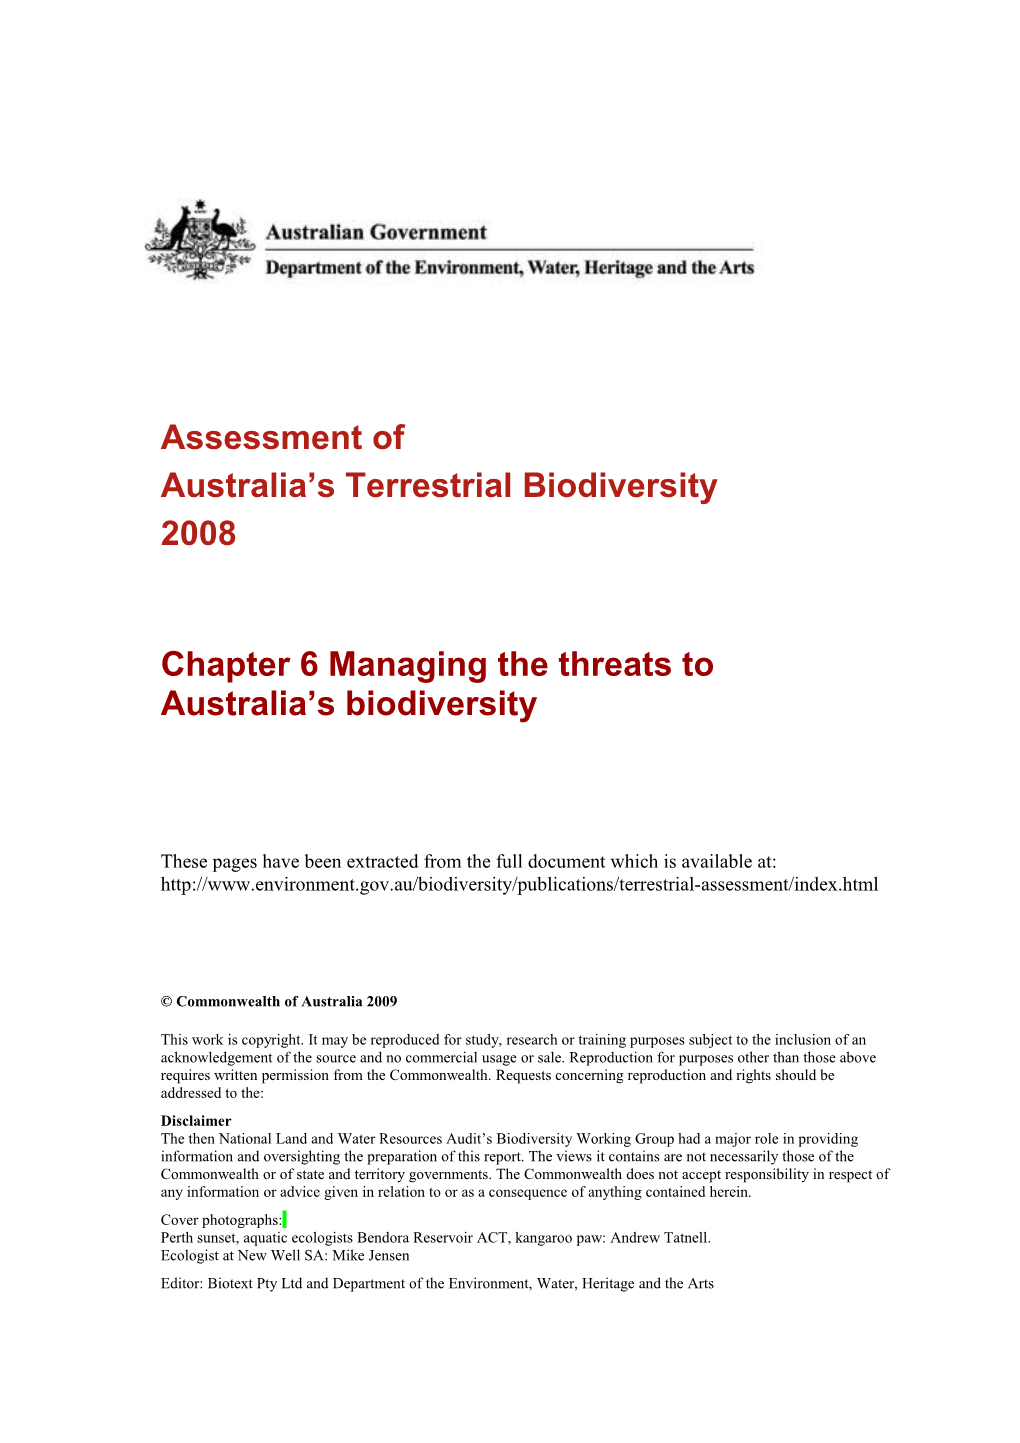 Chapter 6 Assessment of Australia's Terrestrial Biodiversity 2008